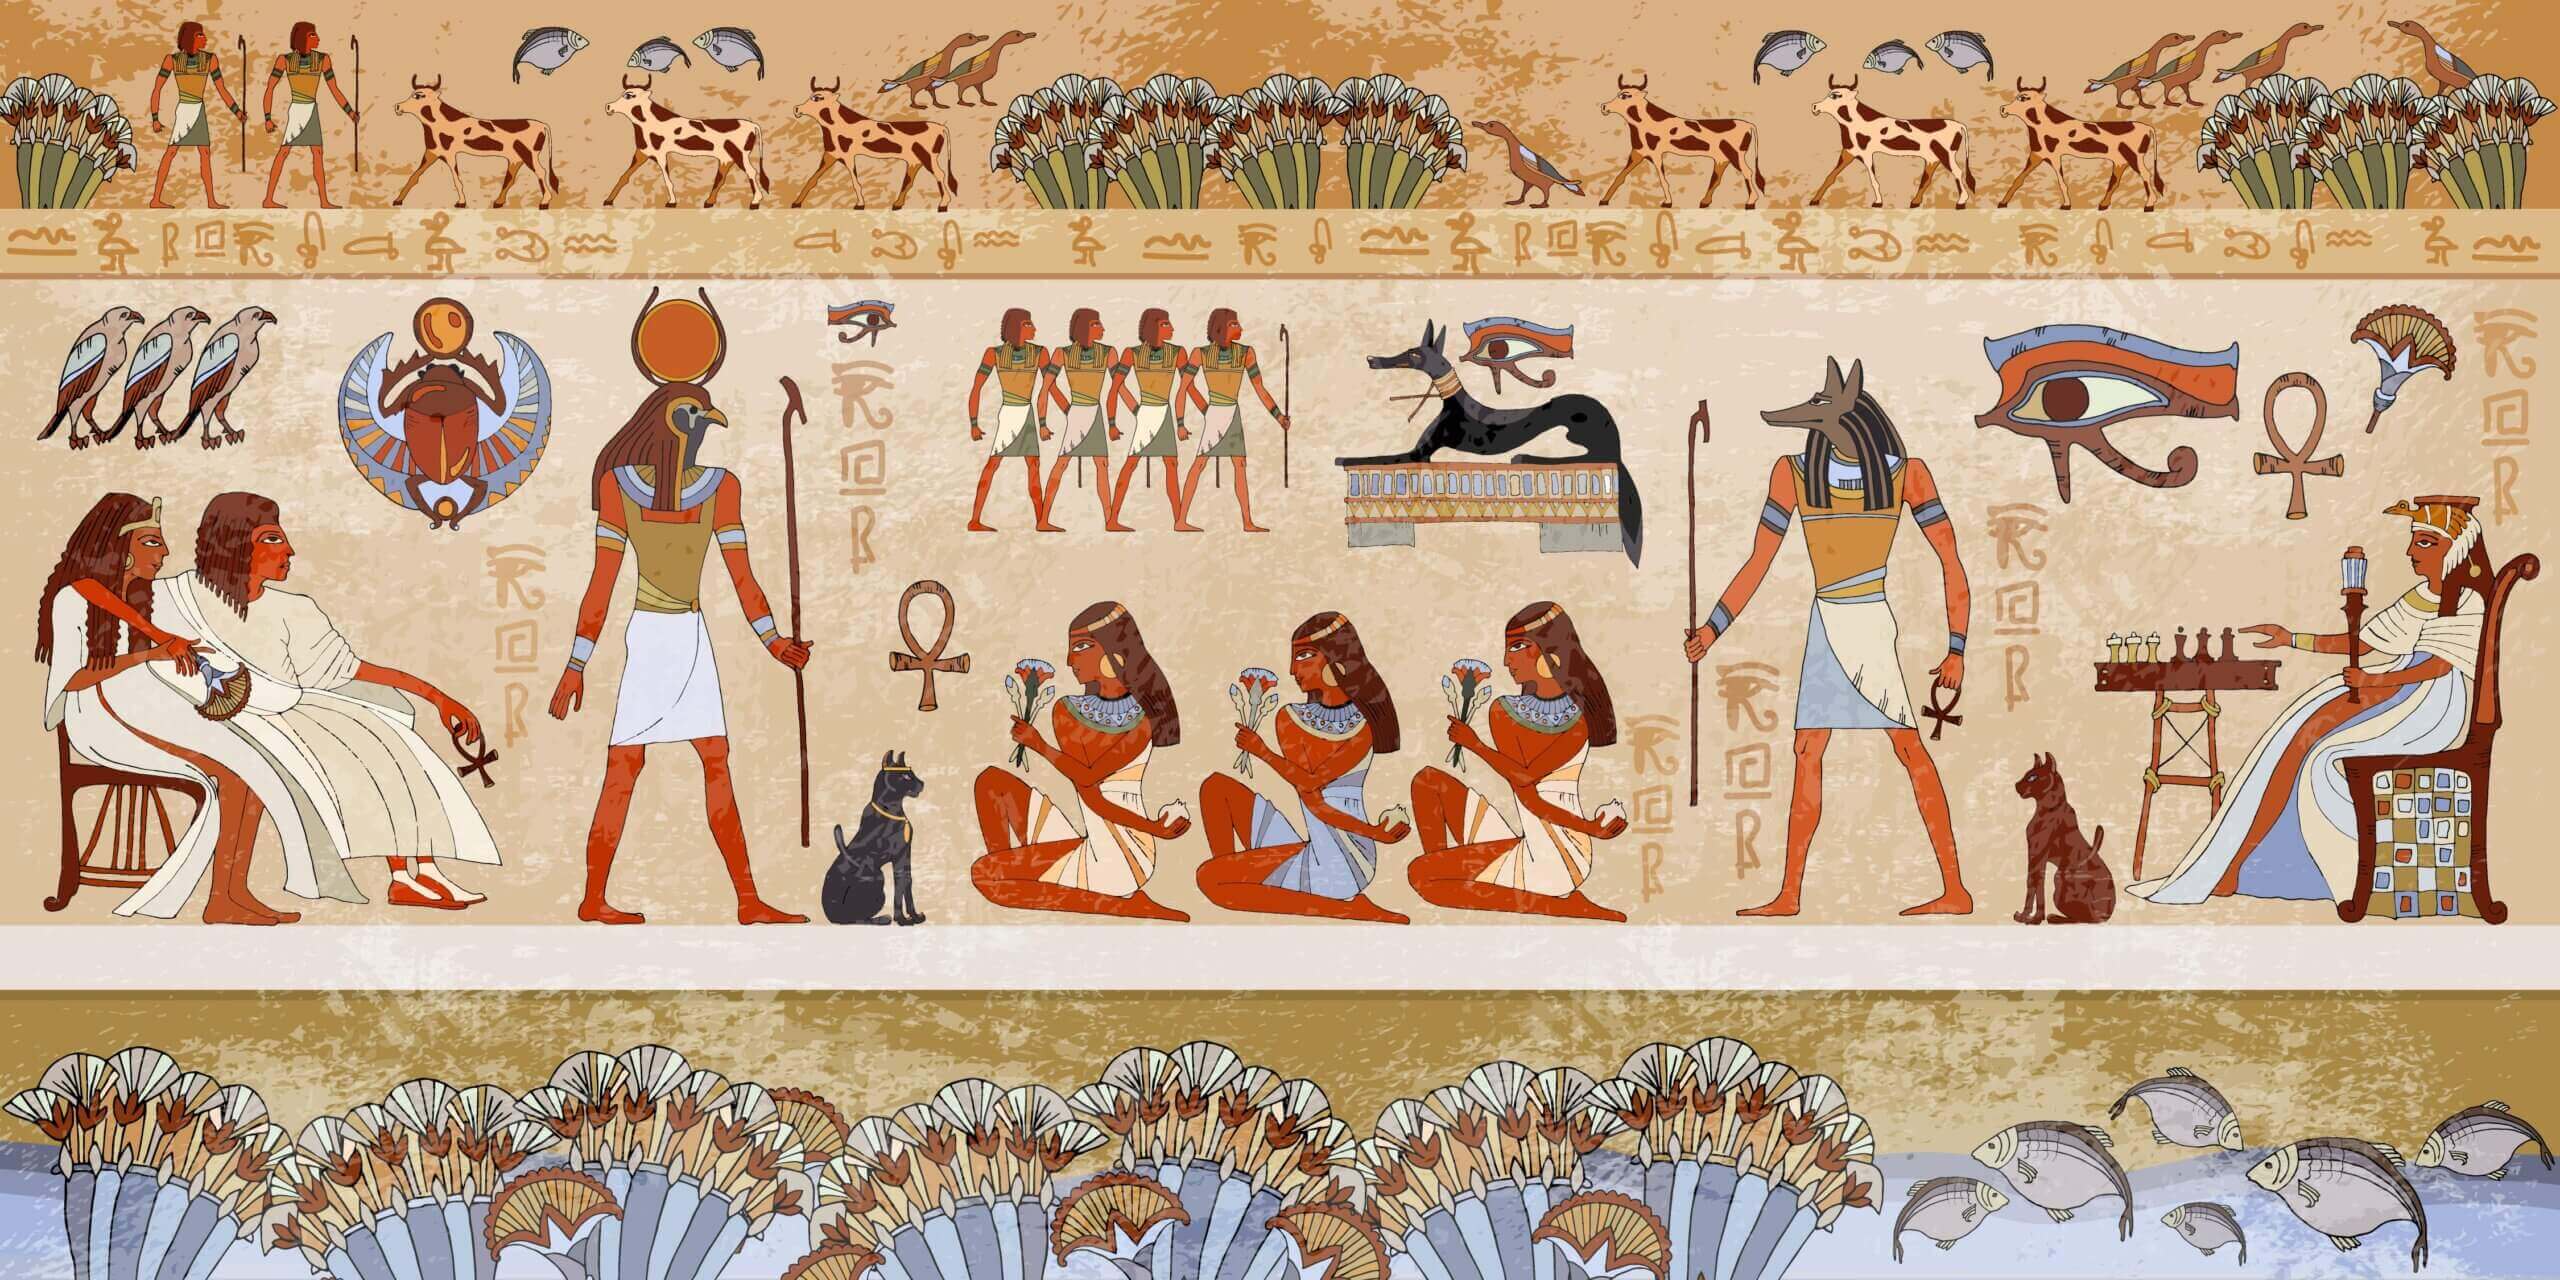 Maleri fra det gamle Egypten